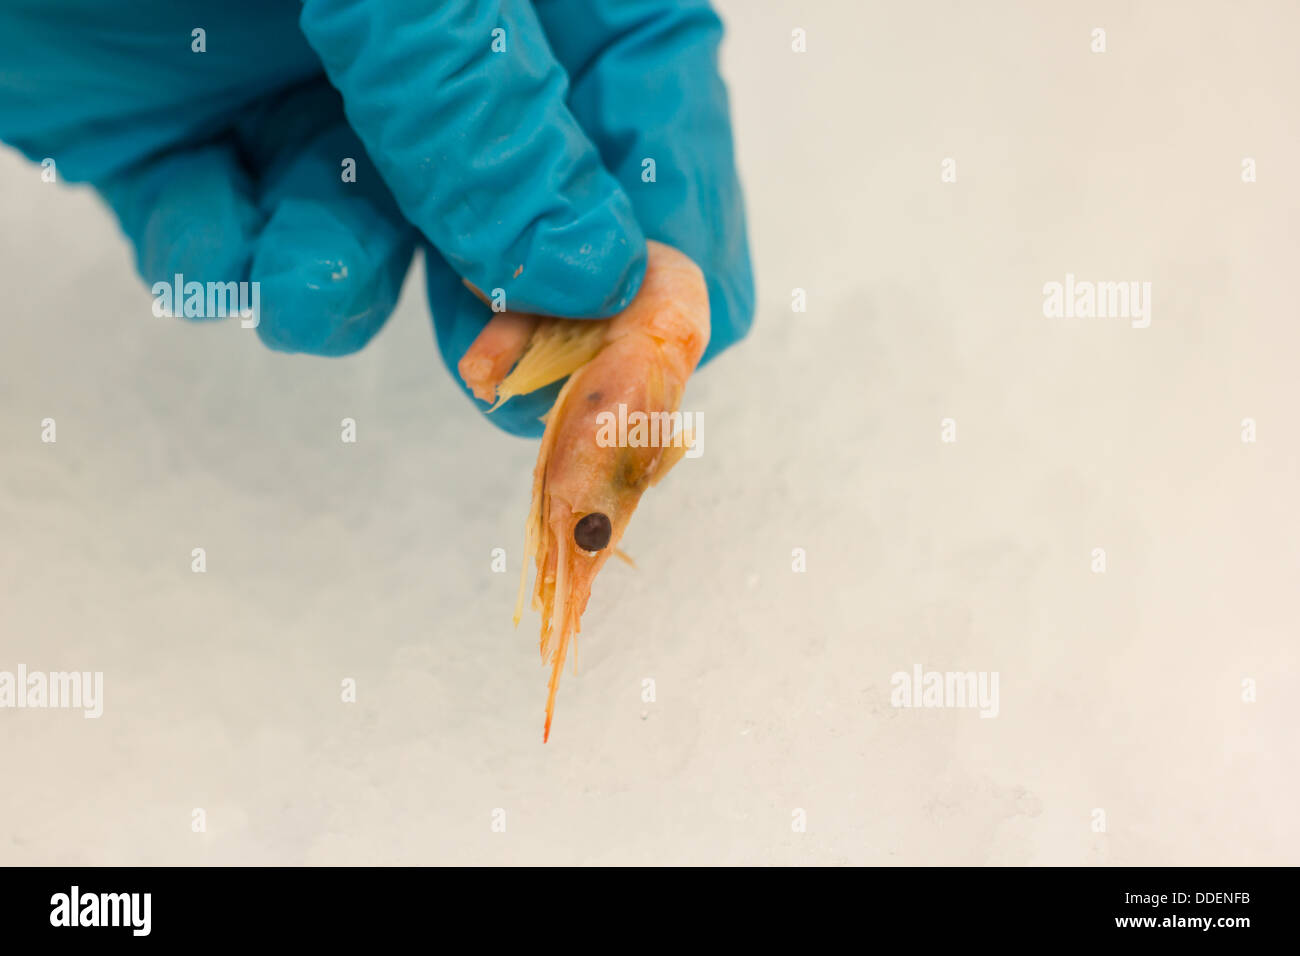 Ein Bild der Garnele aus dem Eis, das es gespeichert ist, von einer Person mit Gummihandschuhen, abgeholt. Querformat Stockfoto